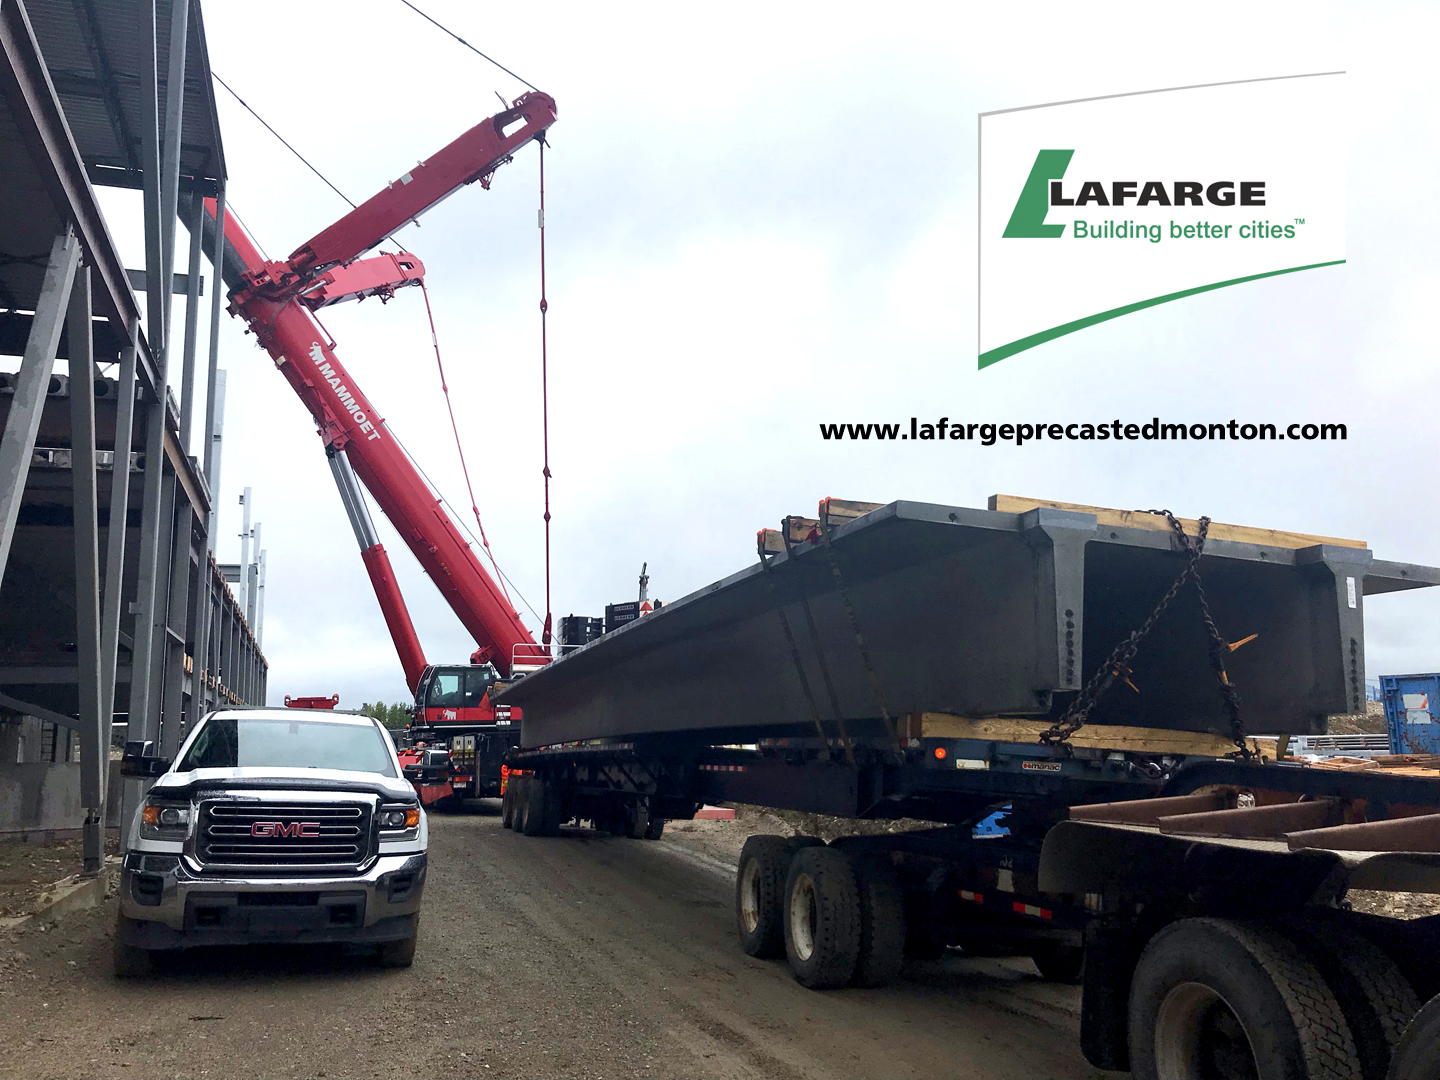 Lafarge Precast Edmonton Double Tees Parkades Decks Concrete Construction Infrastructure Edmonton